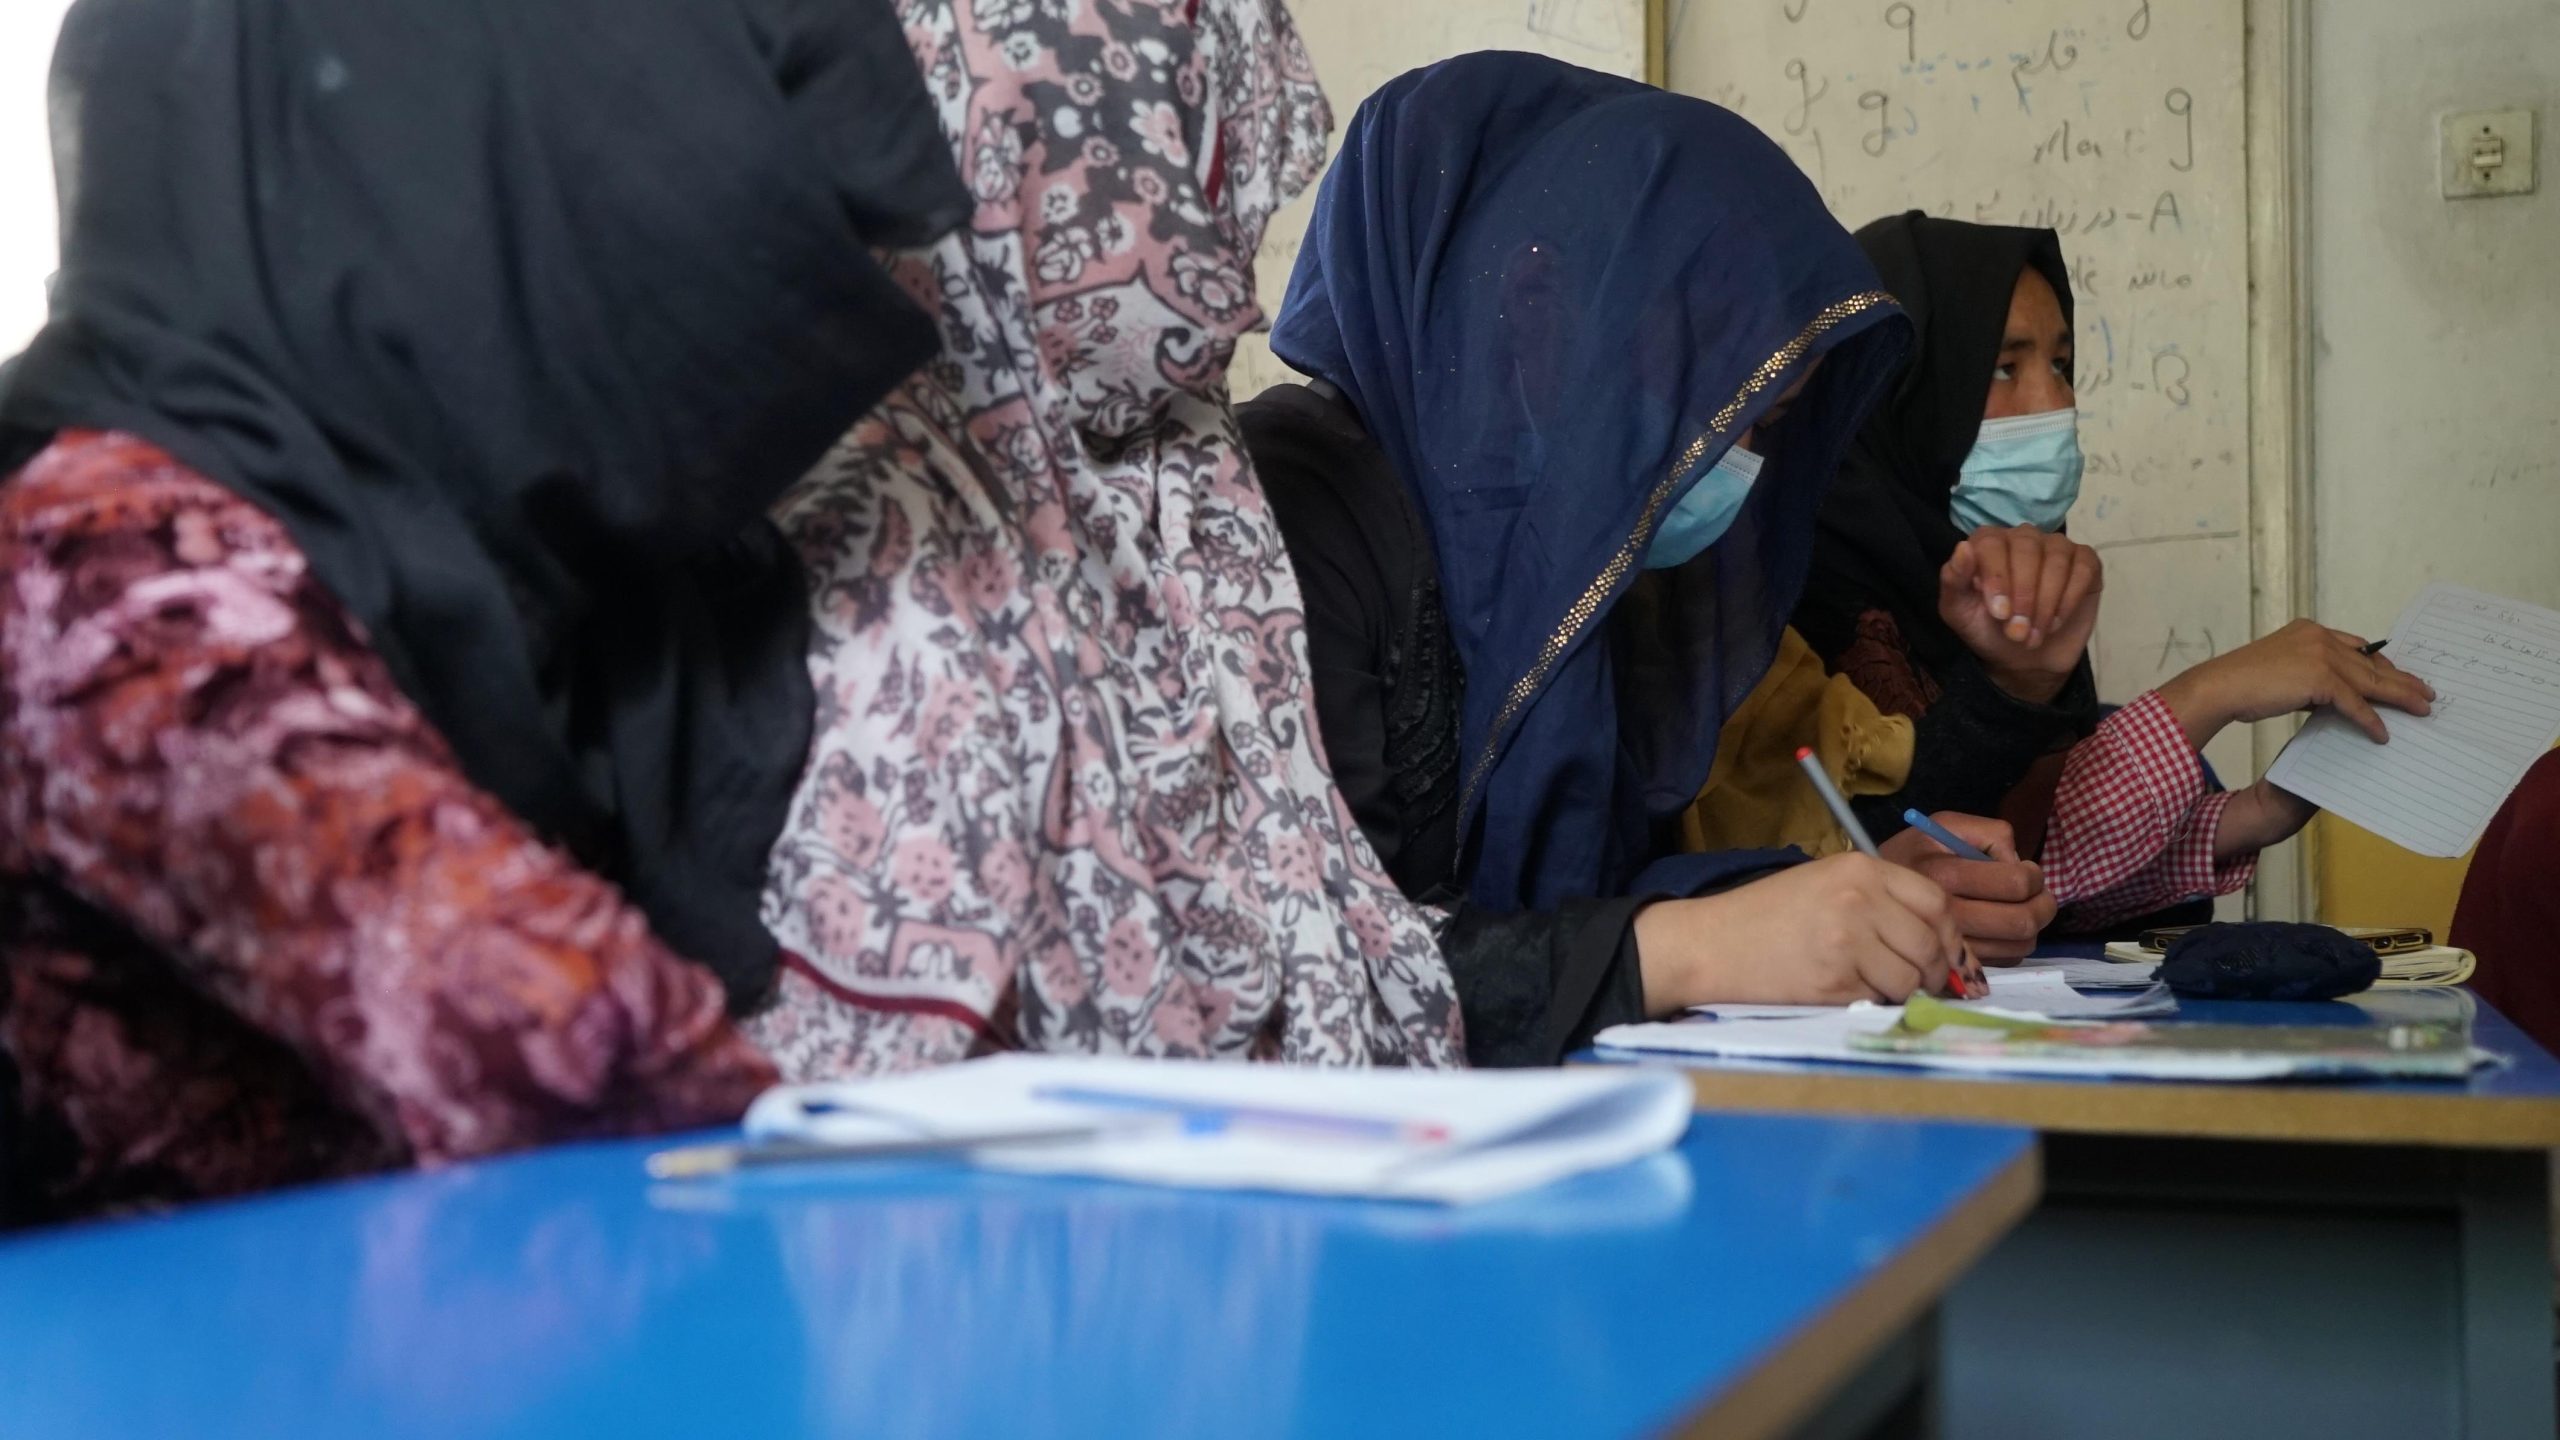 Afghan women between despair and resistance

